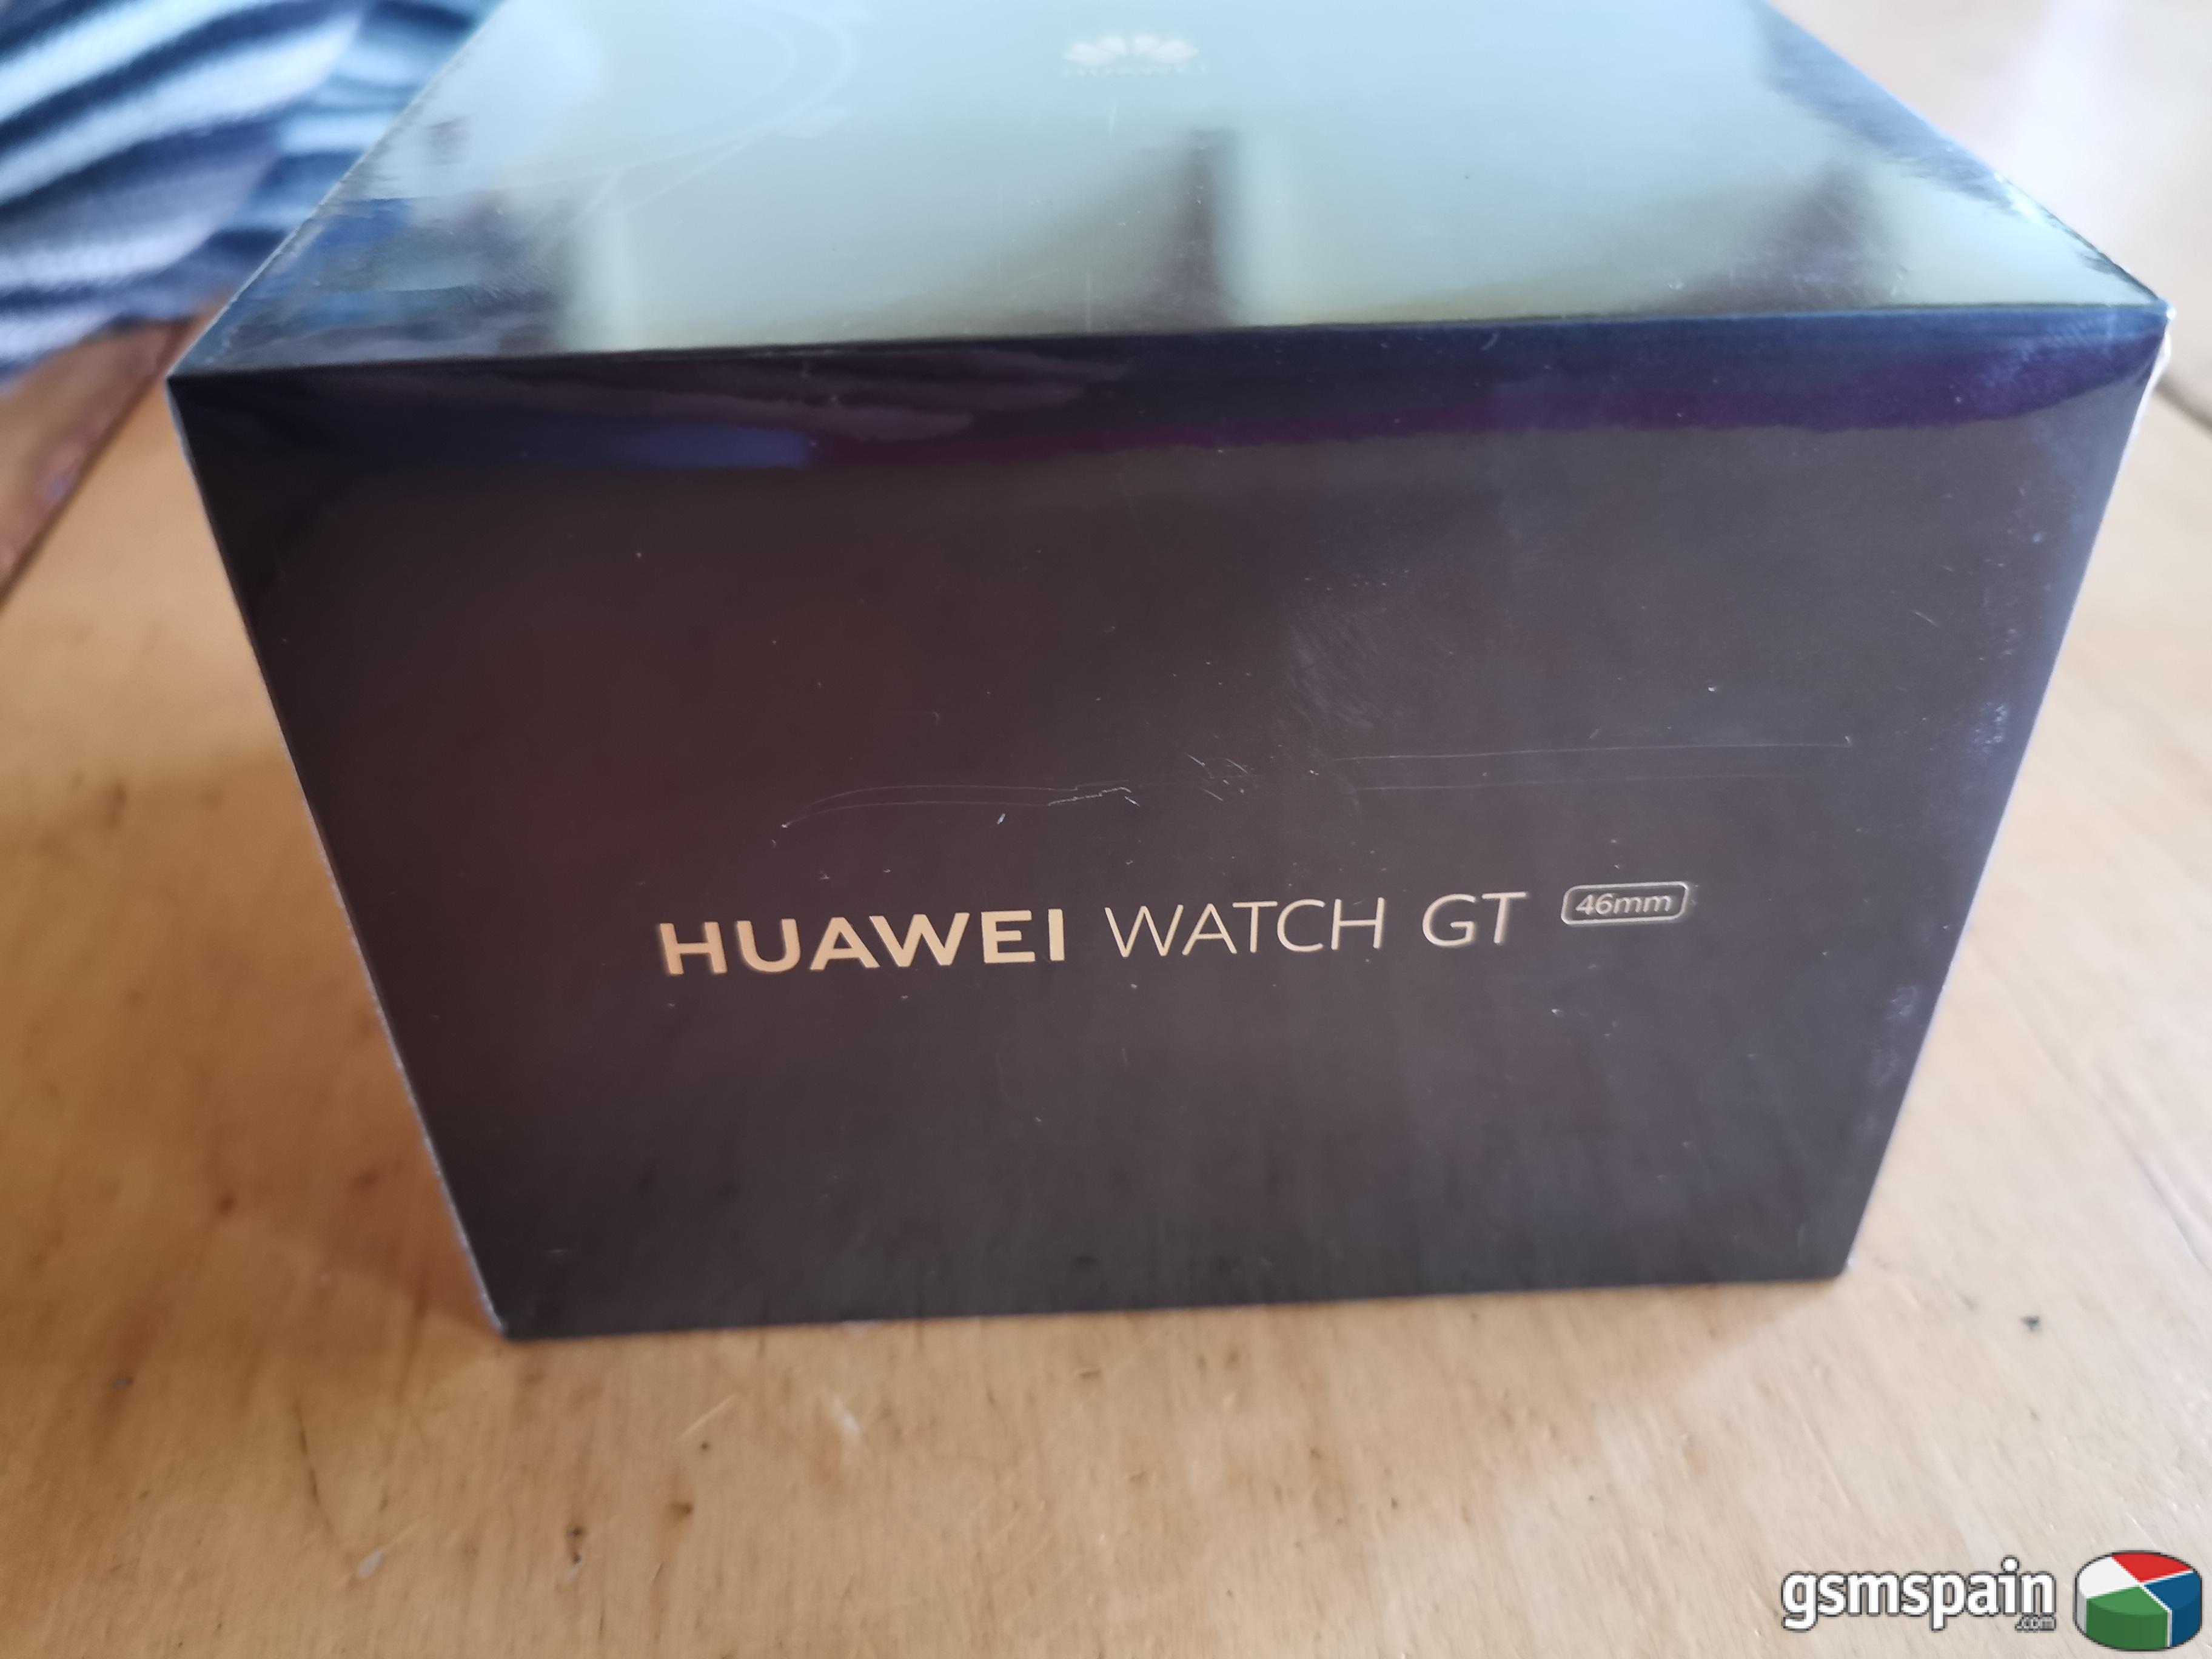 [VENDO] Huawei Watch GT 2019